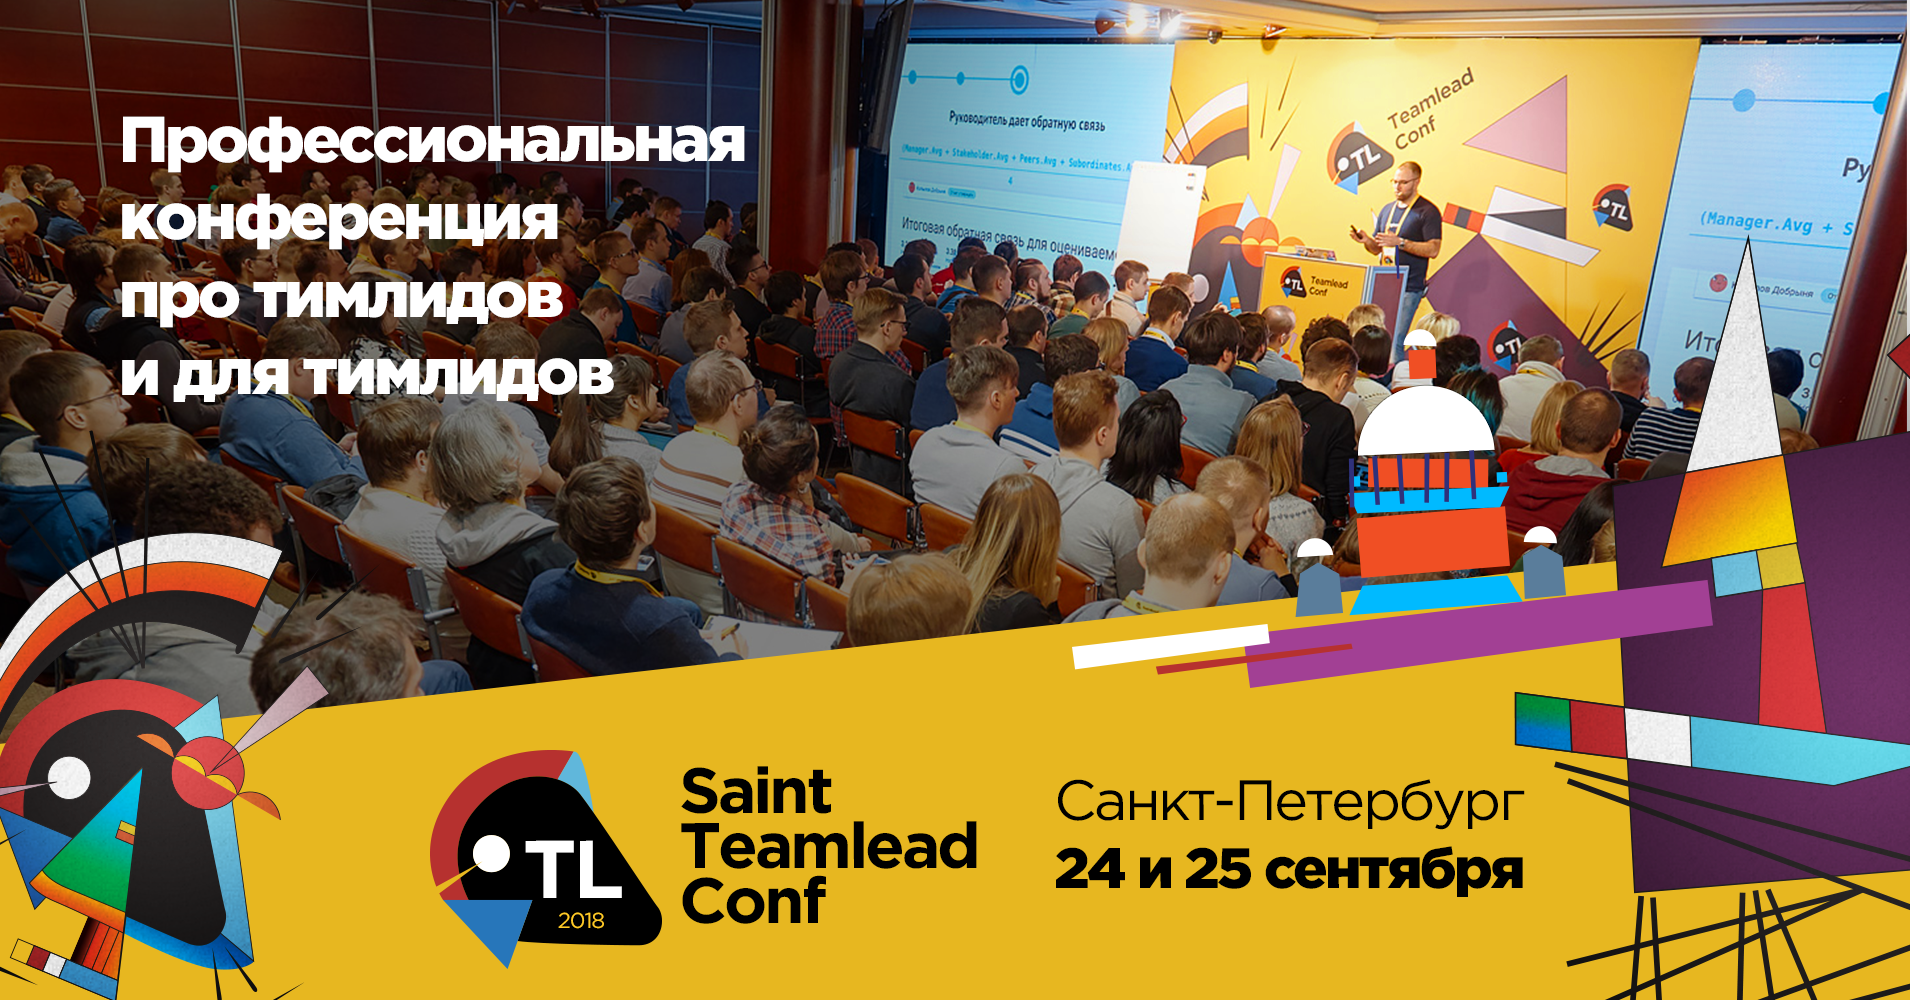 Отличаются ли проблемы тимлидов в Санкт-Петербурге, выясним на Saint TeamLead Conf - 1